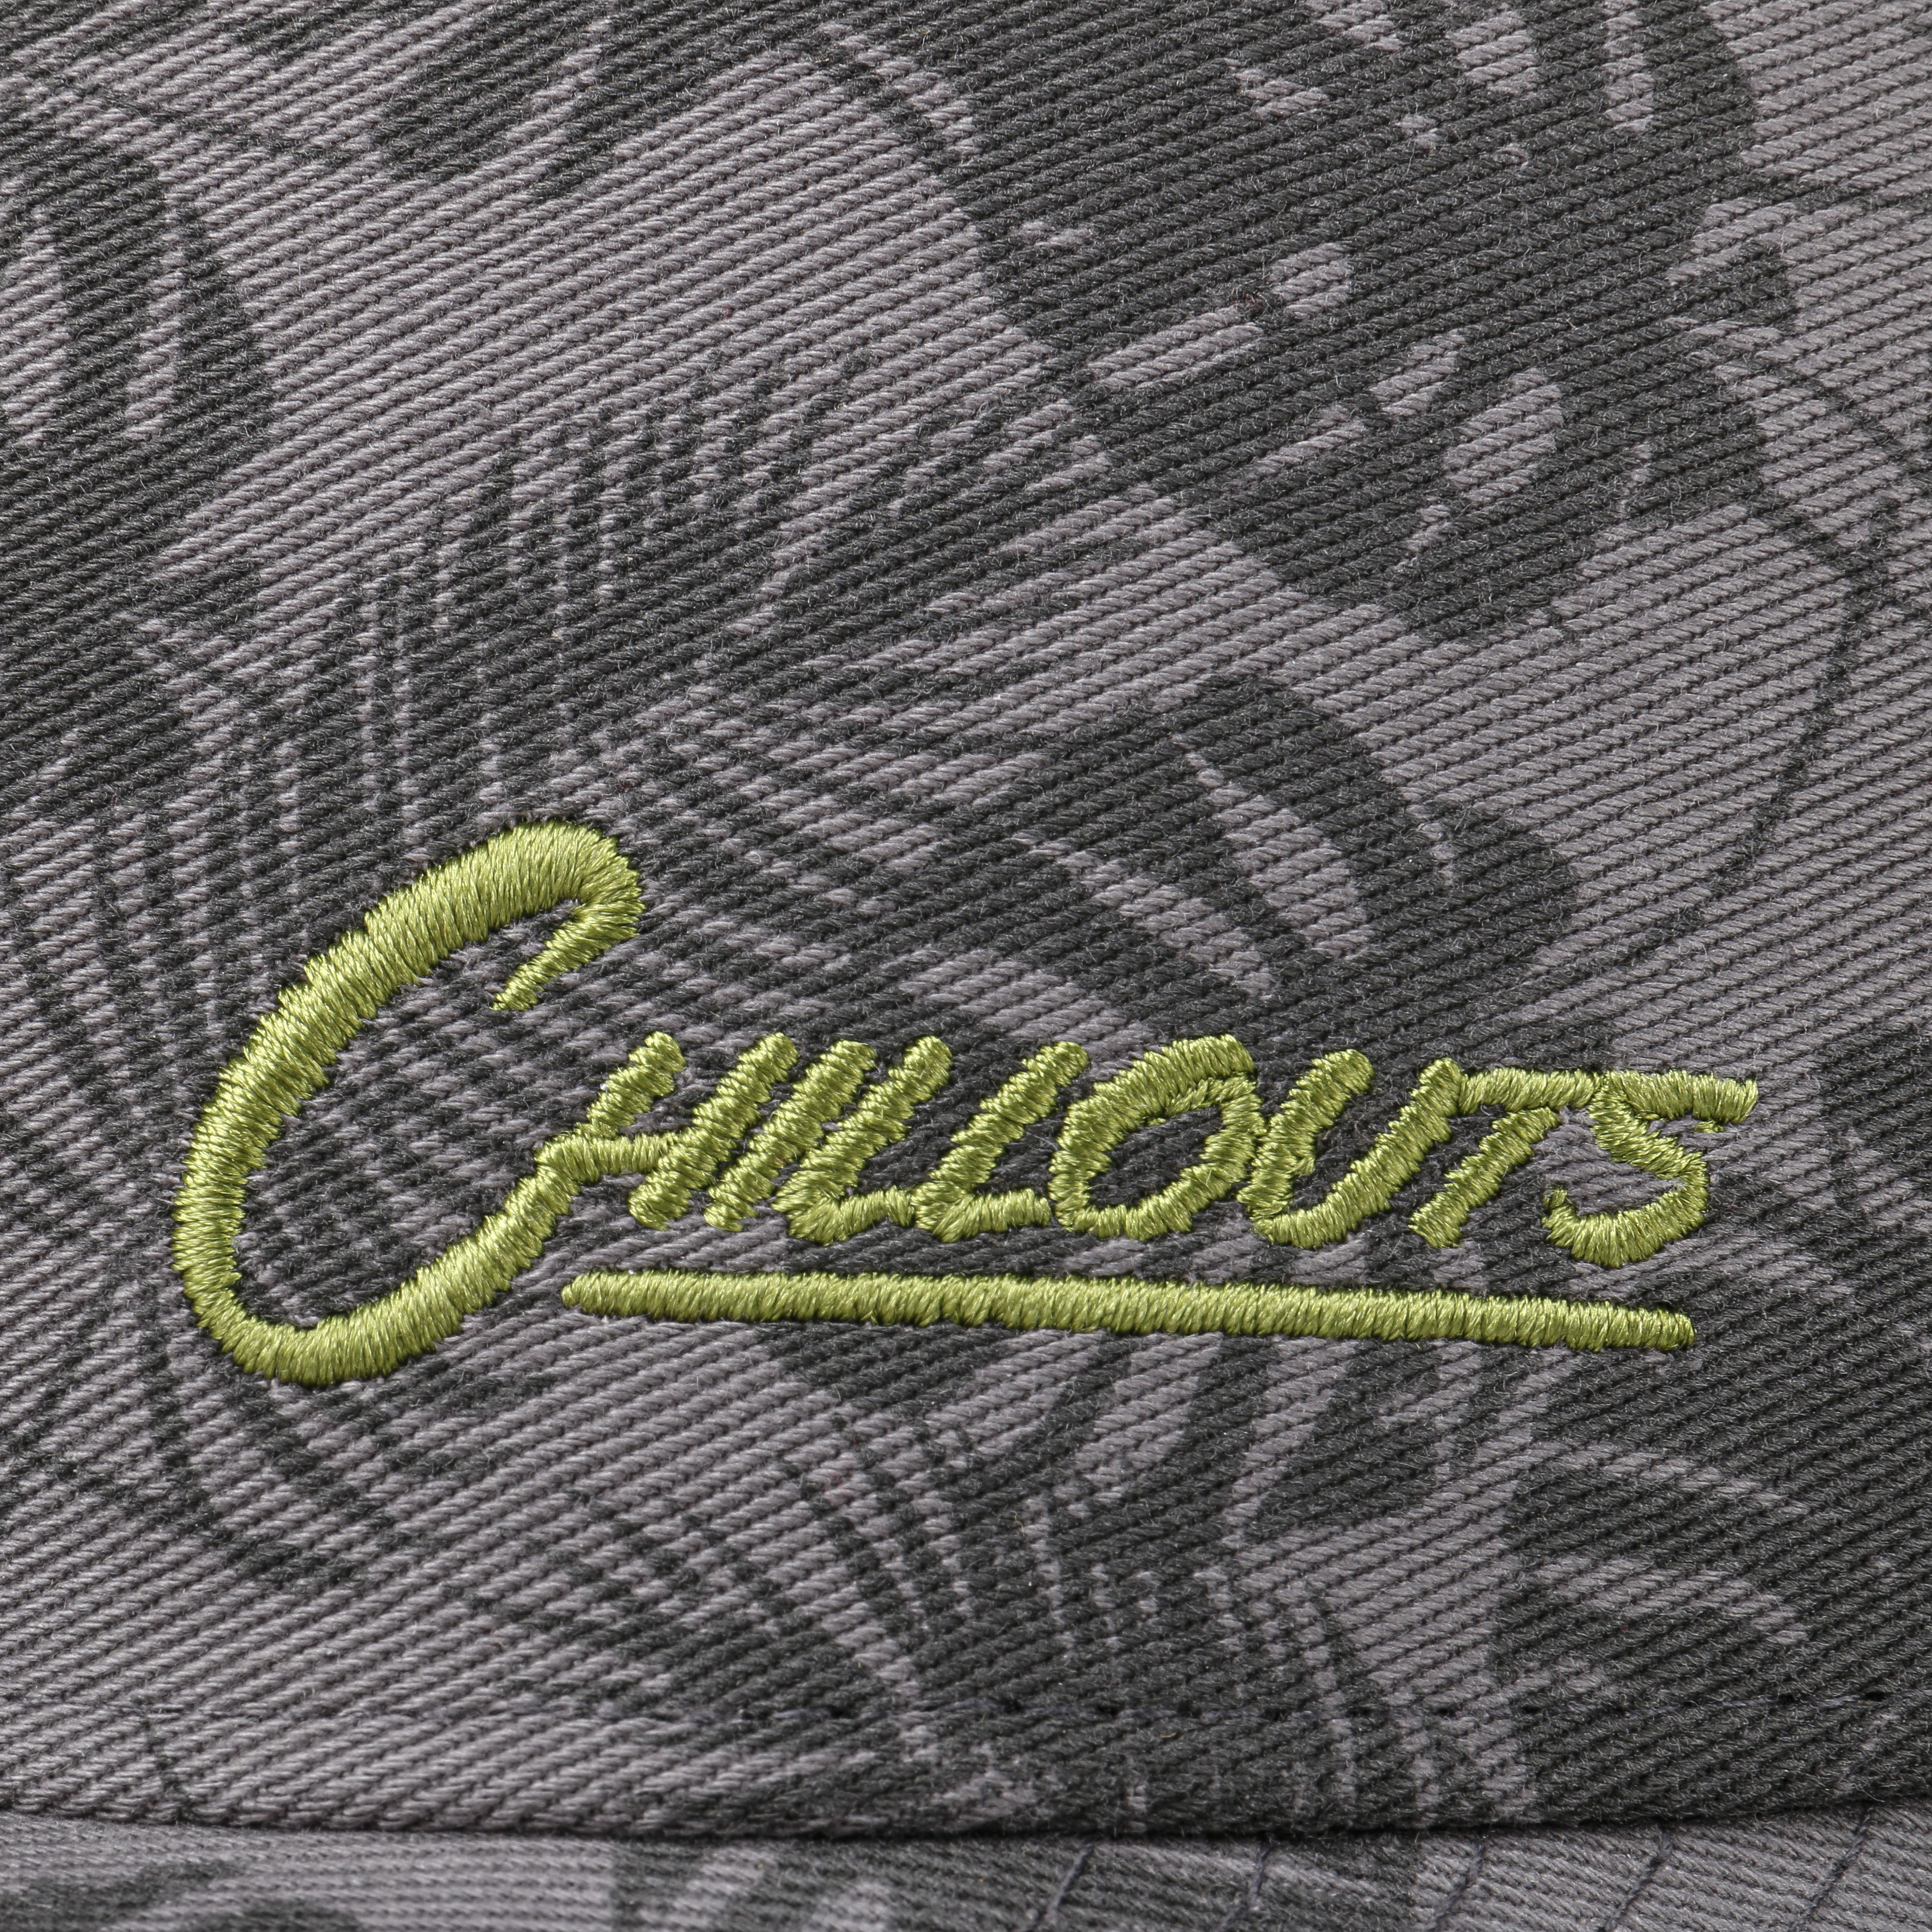 Kilauea Baseball Cap by Chillouts - 26,95 €